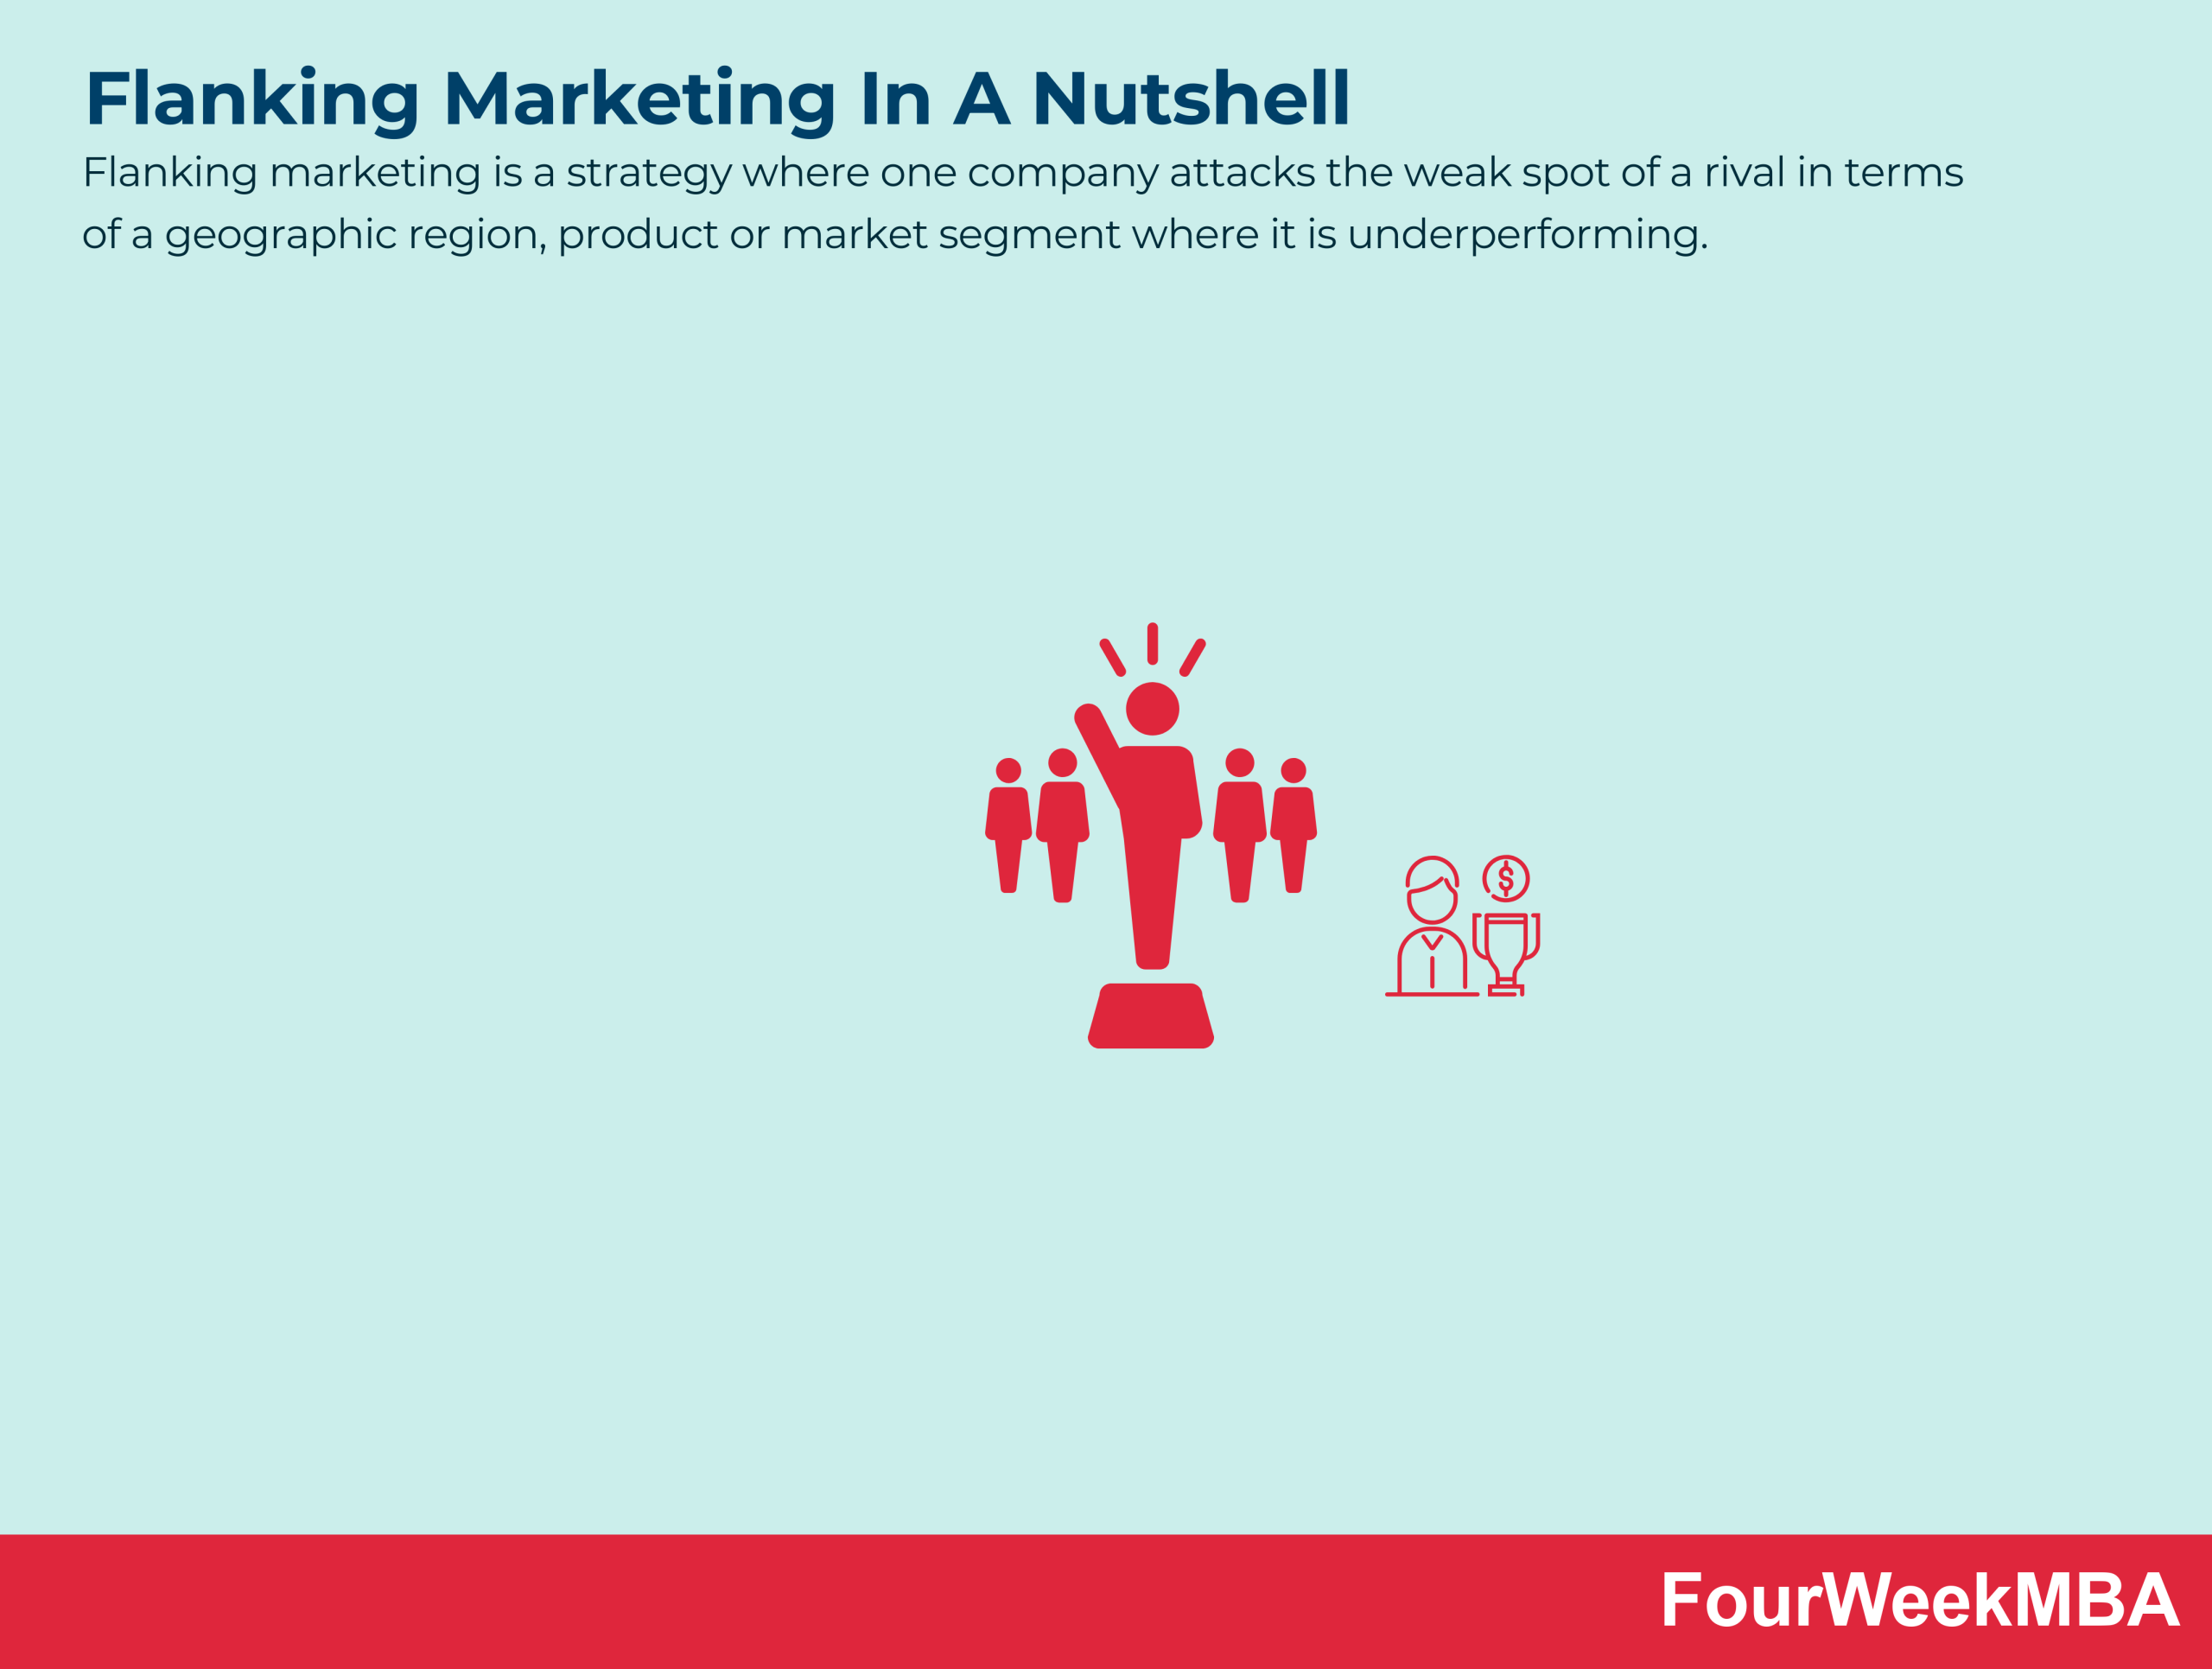 Flanking Marketing - FourWeekMBA